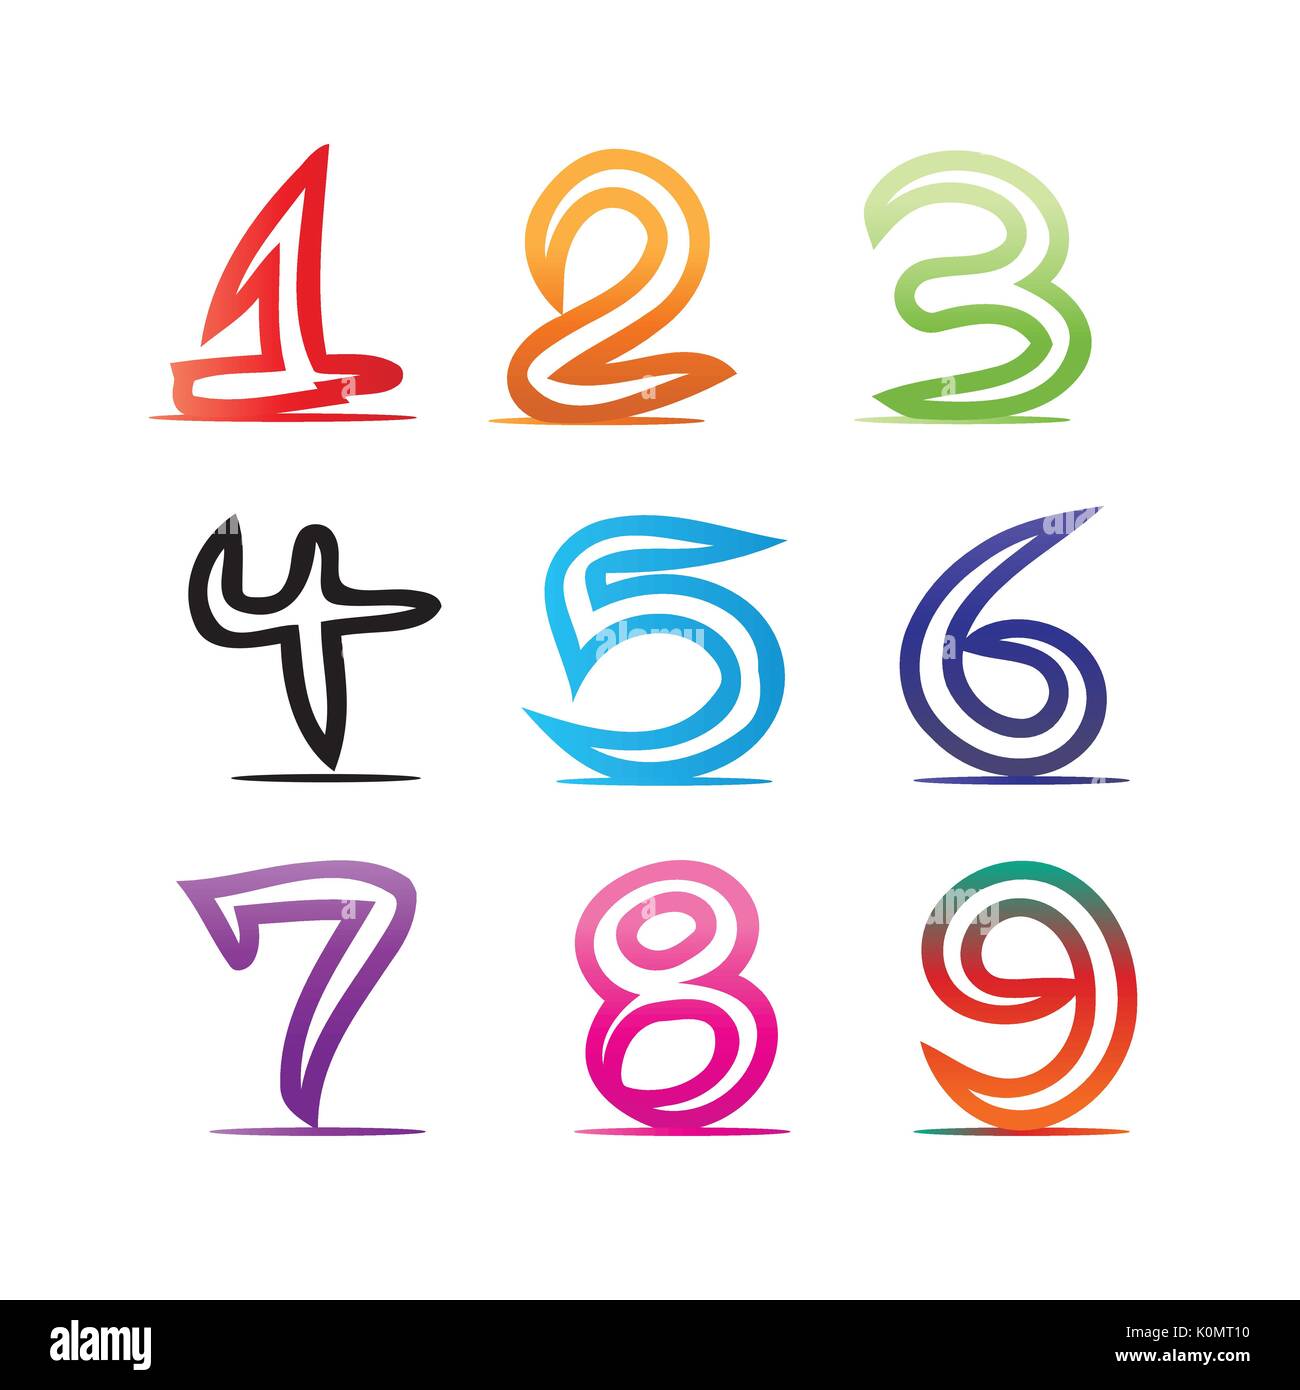 Les numéros de l'illustration en couleur, un, deux, trois, quatre, cinq, six, sept, huit, neuf, zéro, l'icône design, isolé sur fond blanc. Illustration de Vecteur